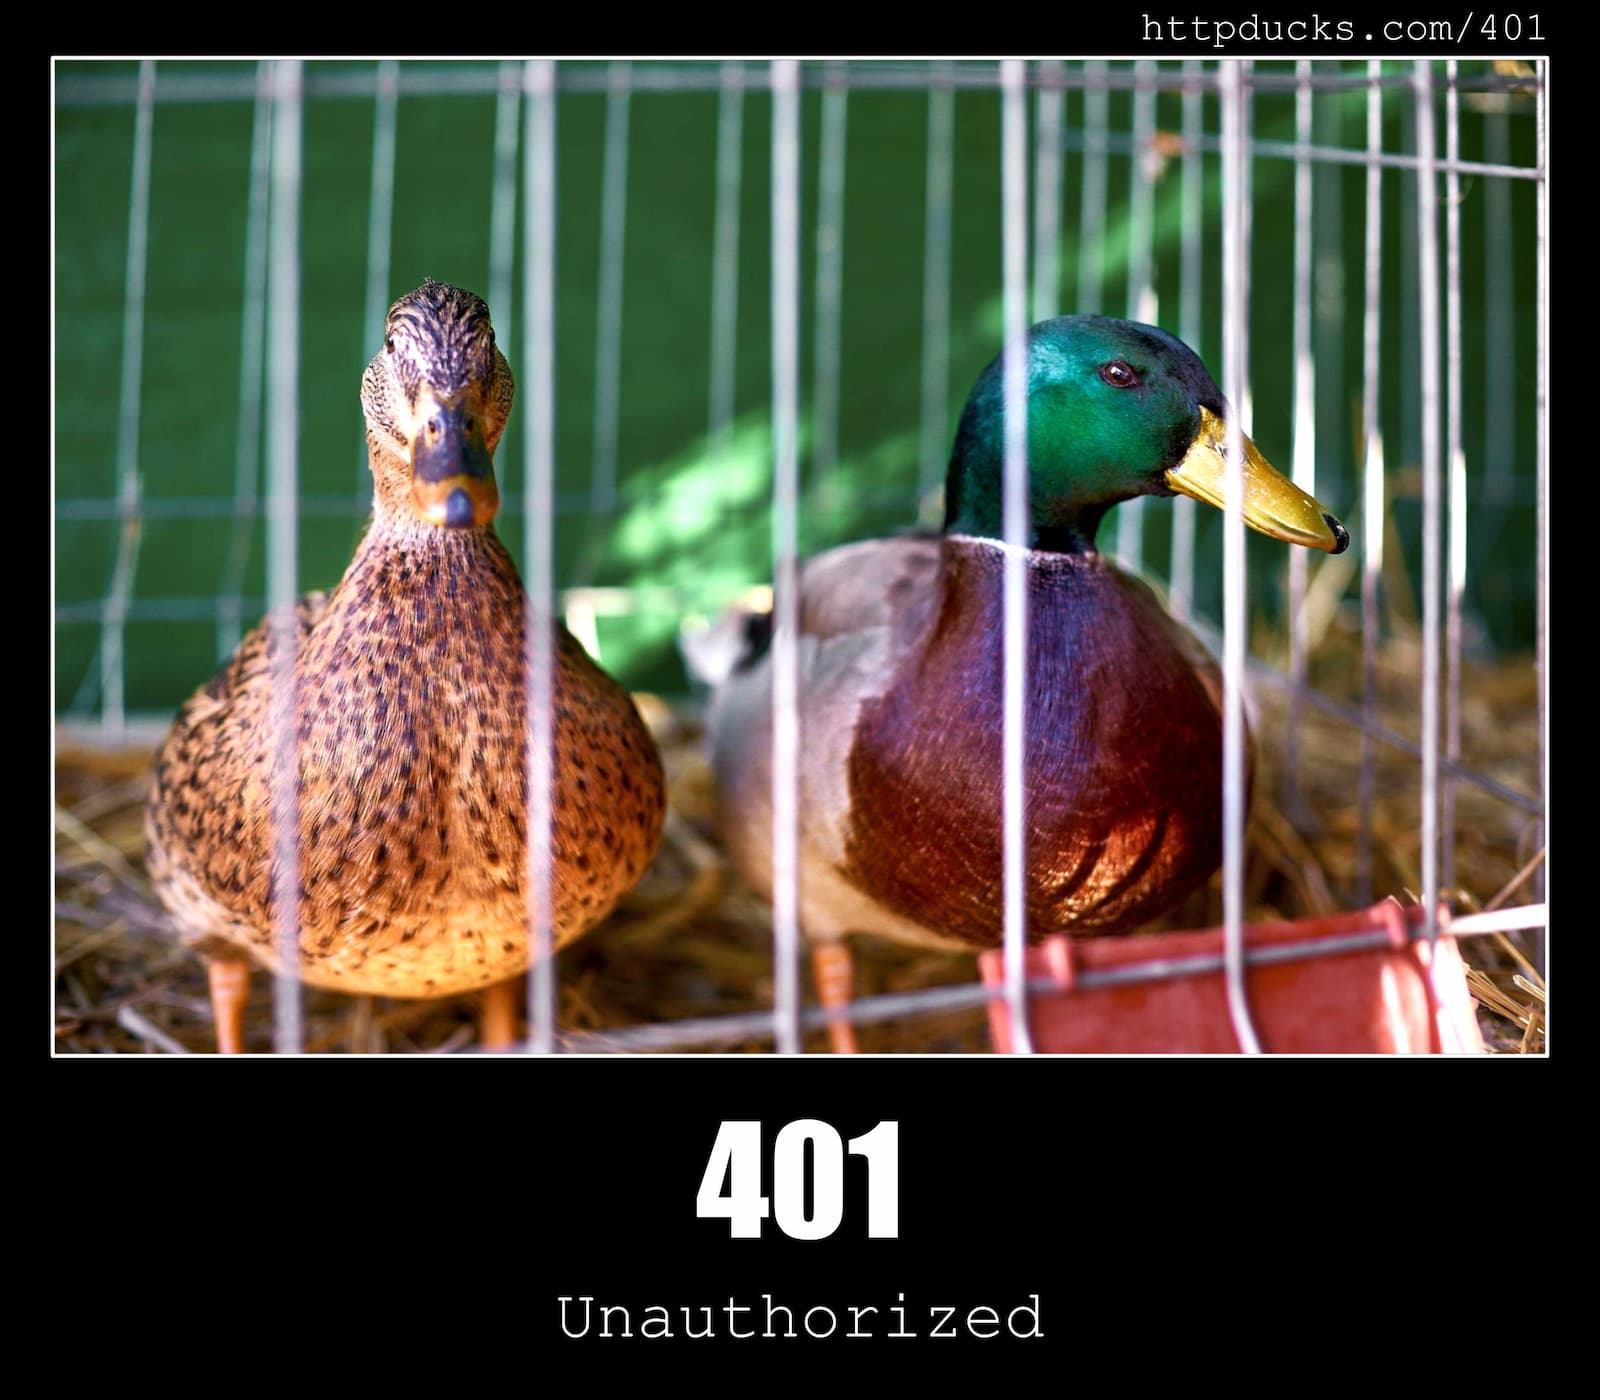 HTTP Status Code 401 Unauthorized & Ducks